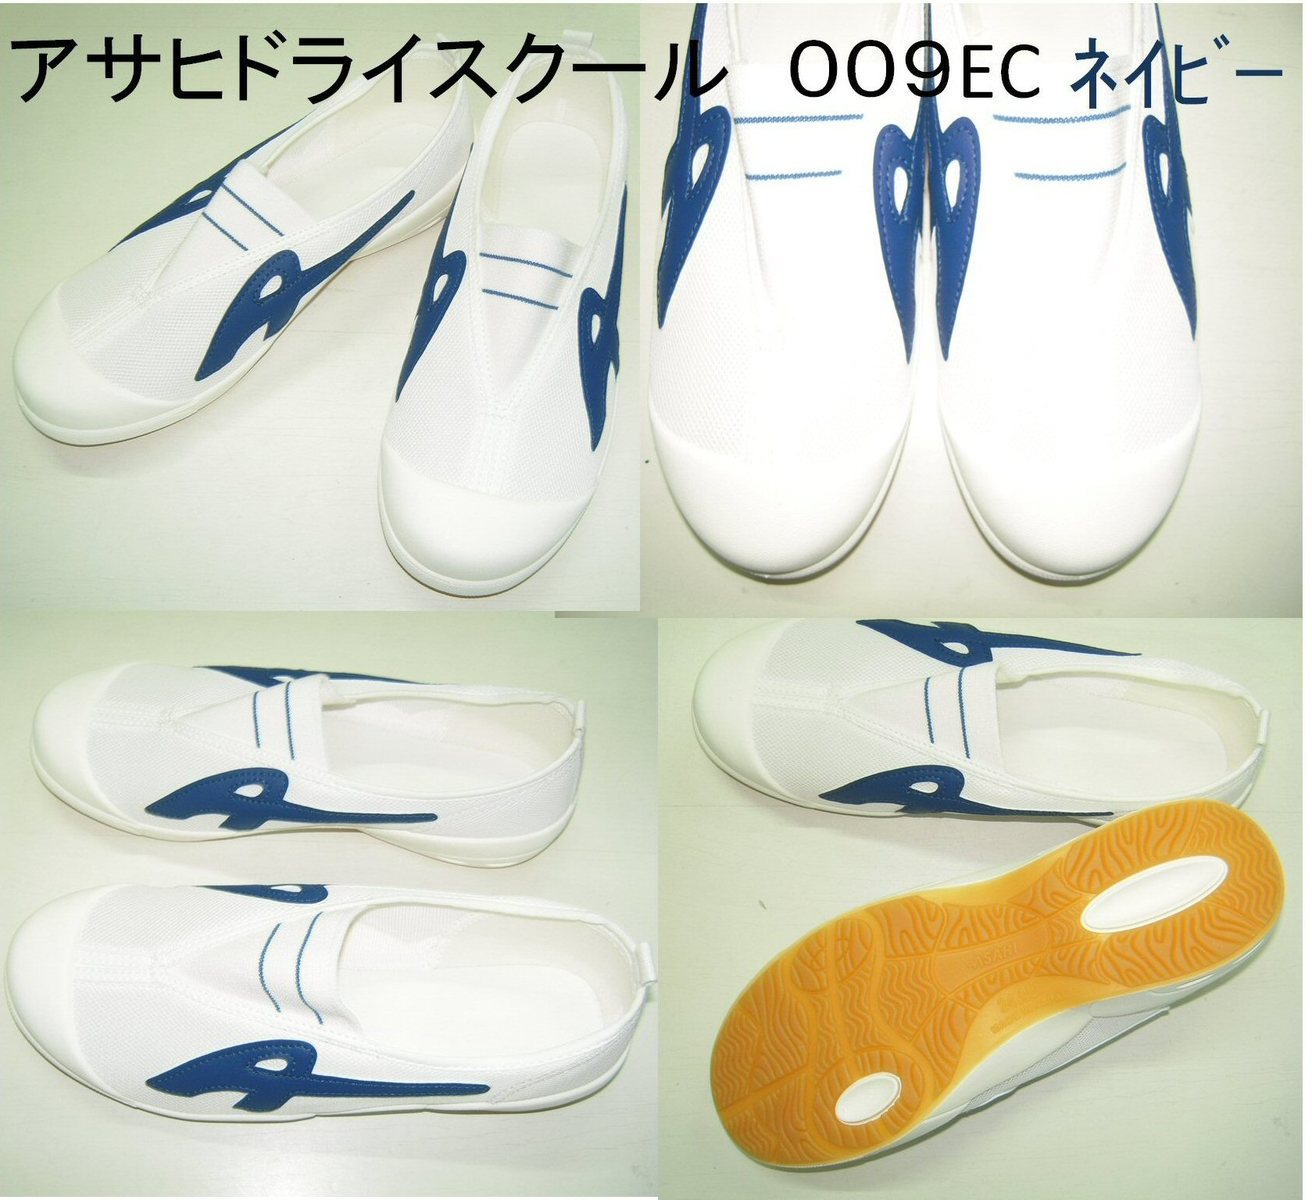 【アサヒ】ドライスクール 009EC 上履き スクールシューズ 上靴 白 学校指定靴 日本製 体育館利用にも